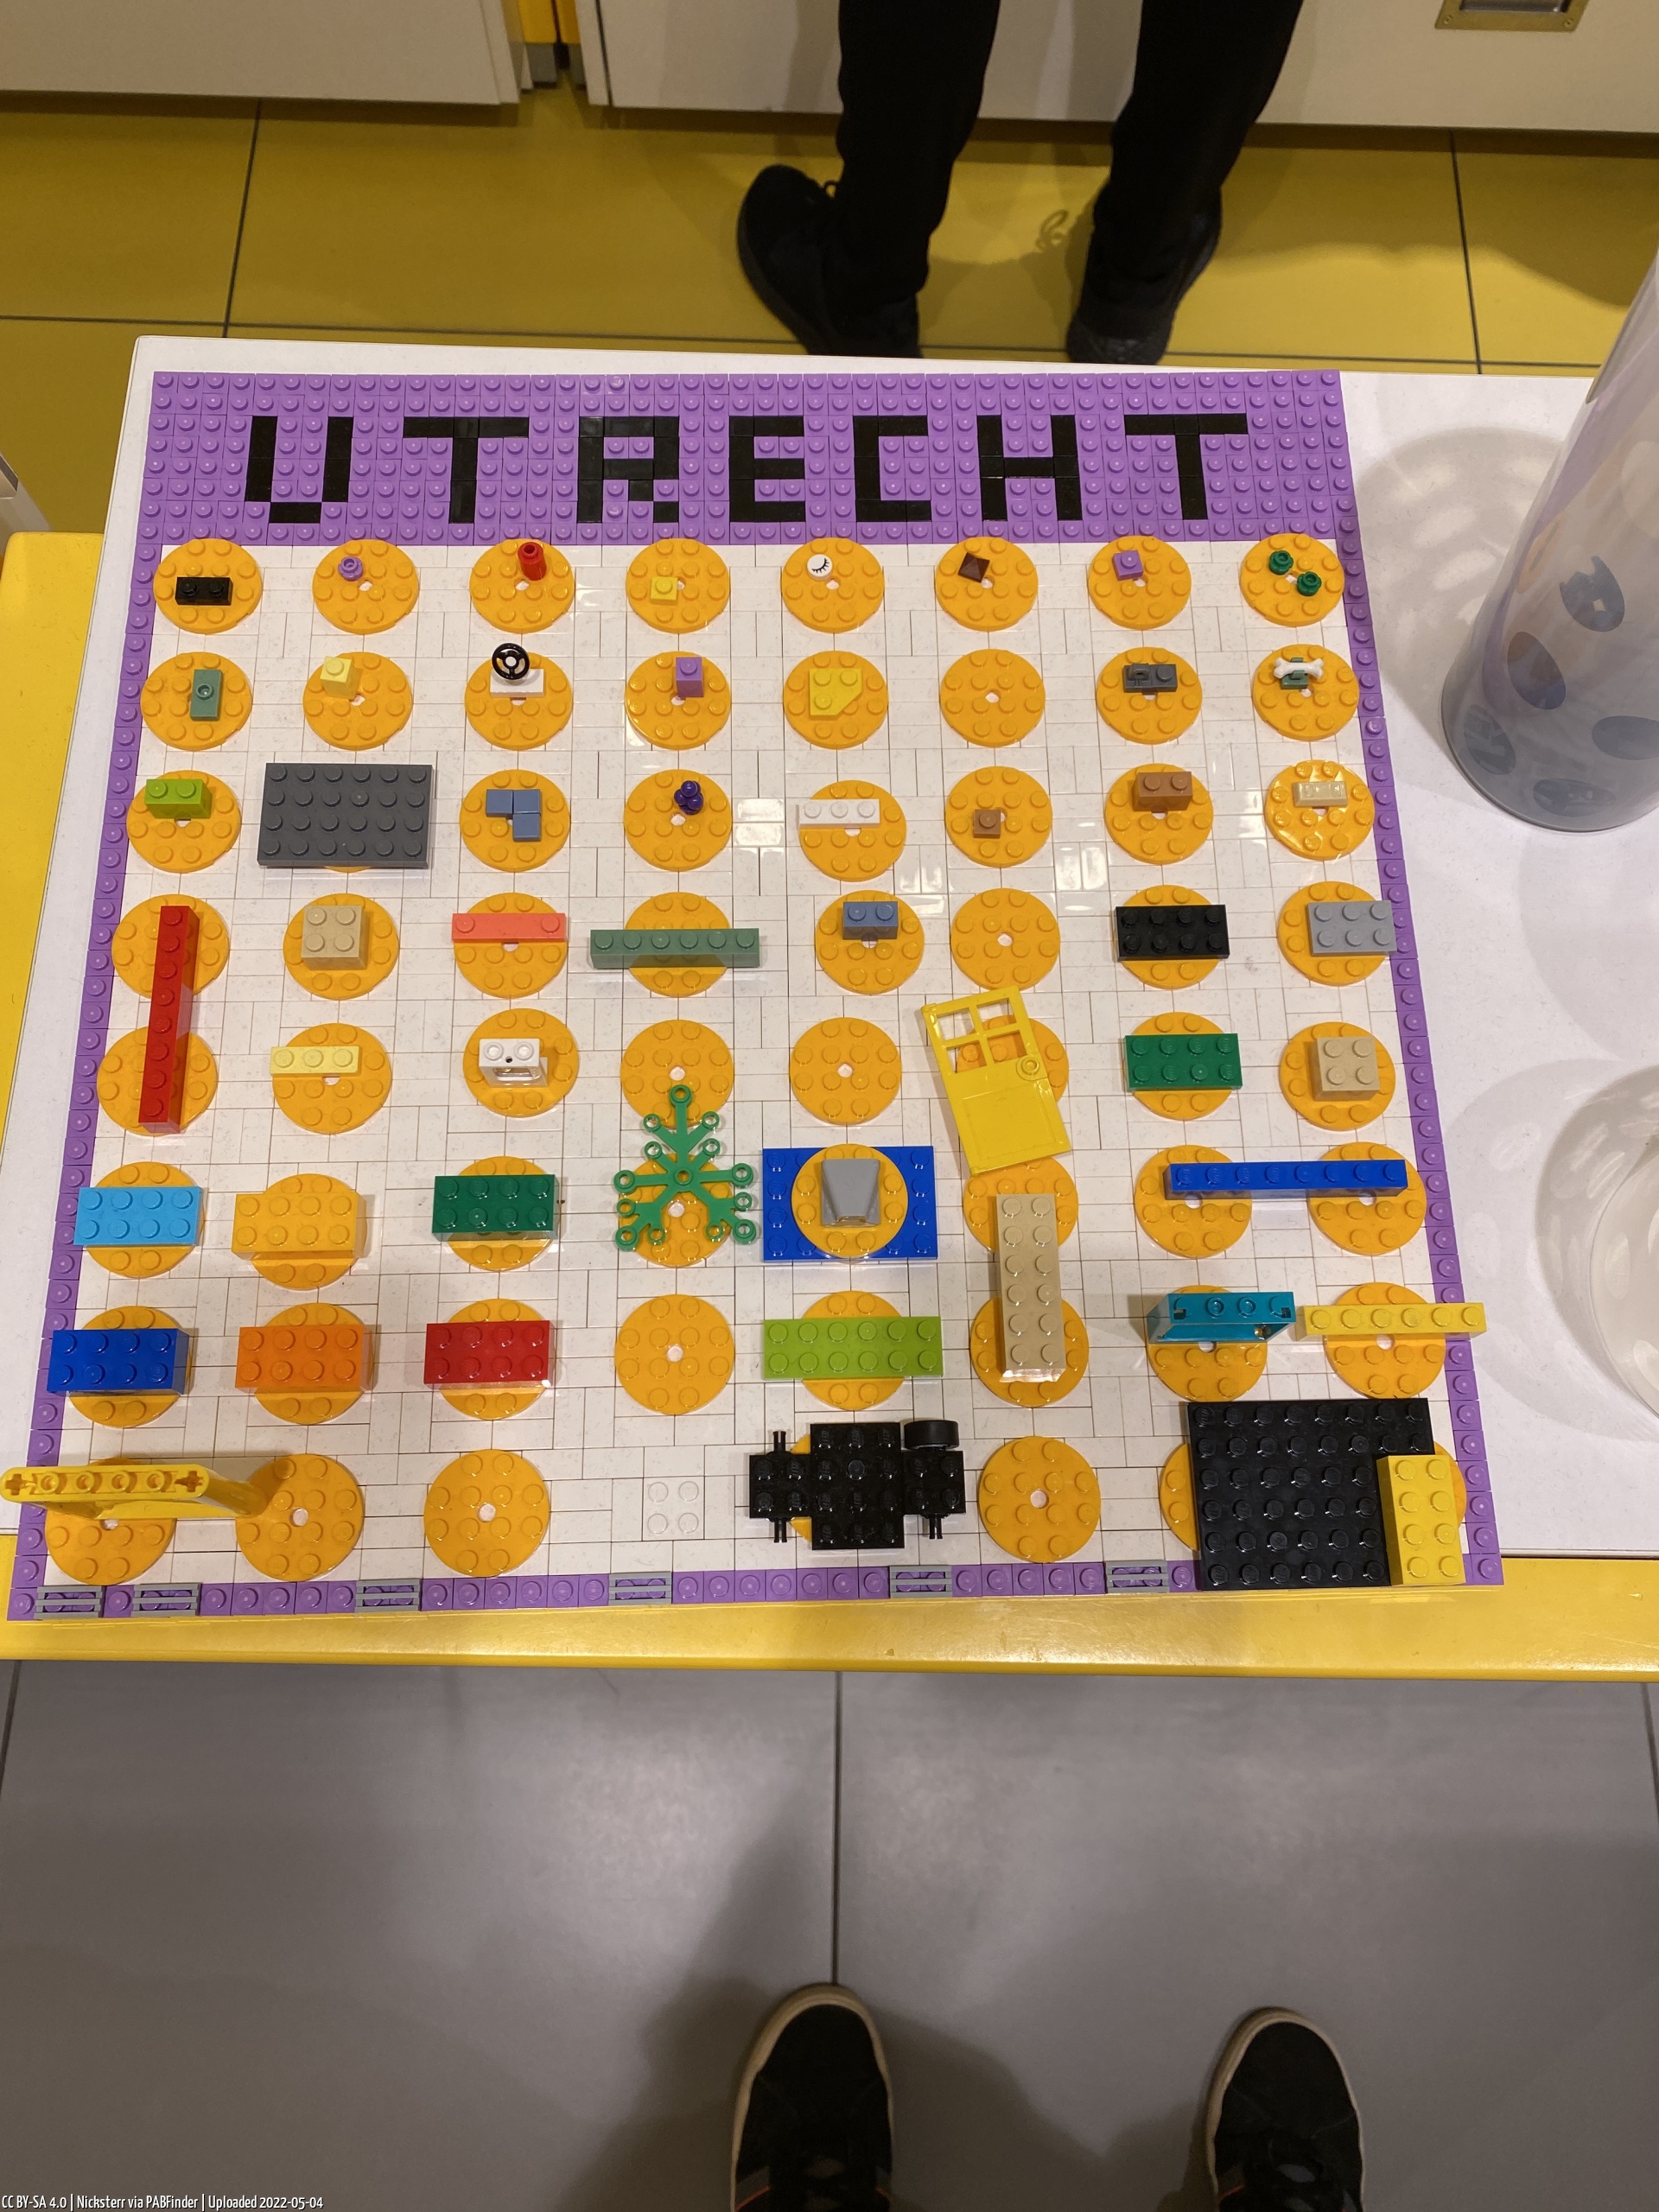 Pick a Brick Utrecht (Nicksterr am 04.05.22, 09:58:42)